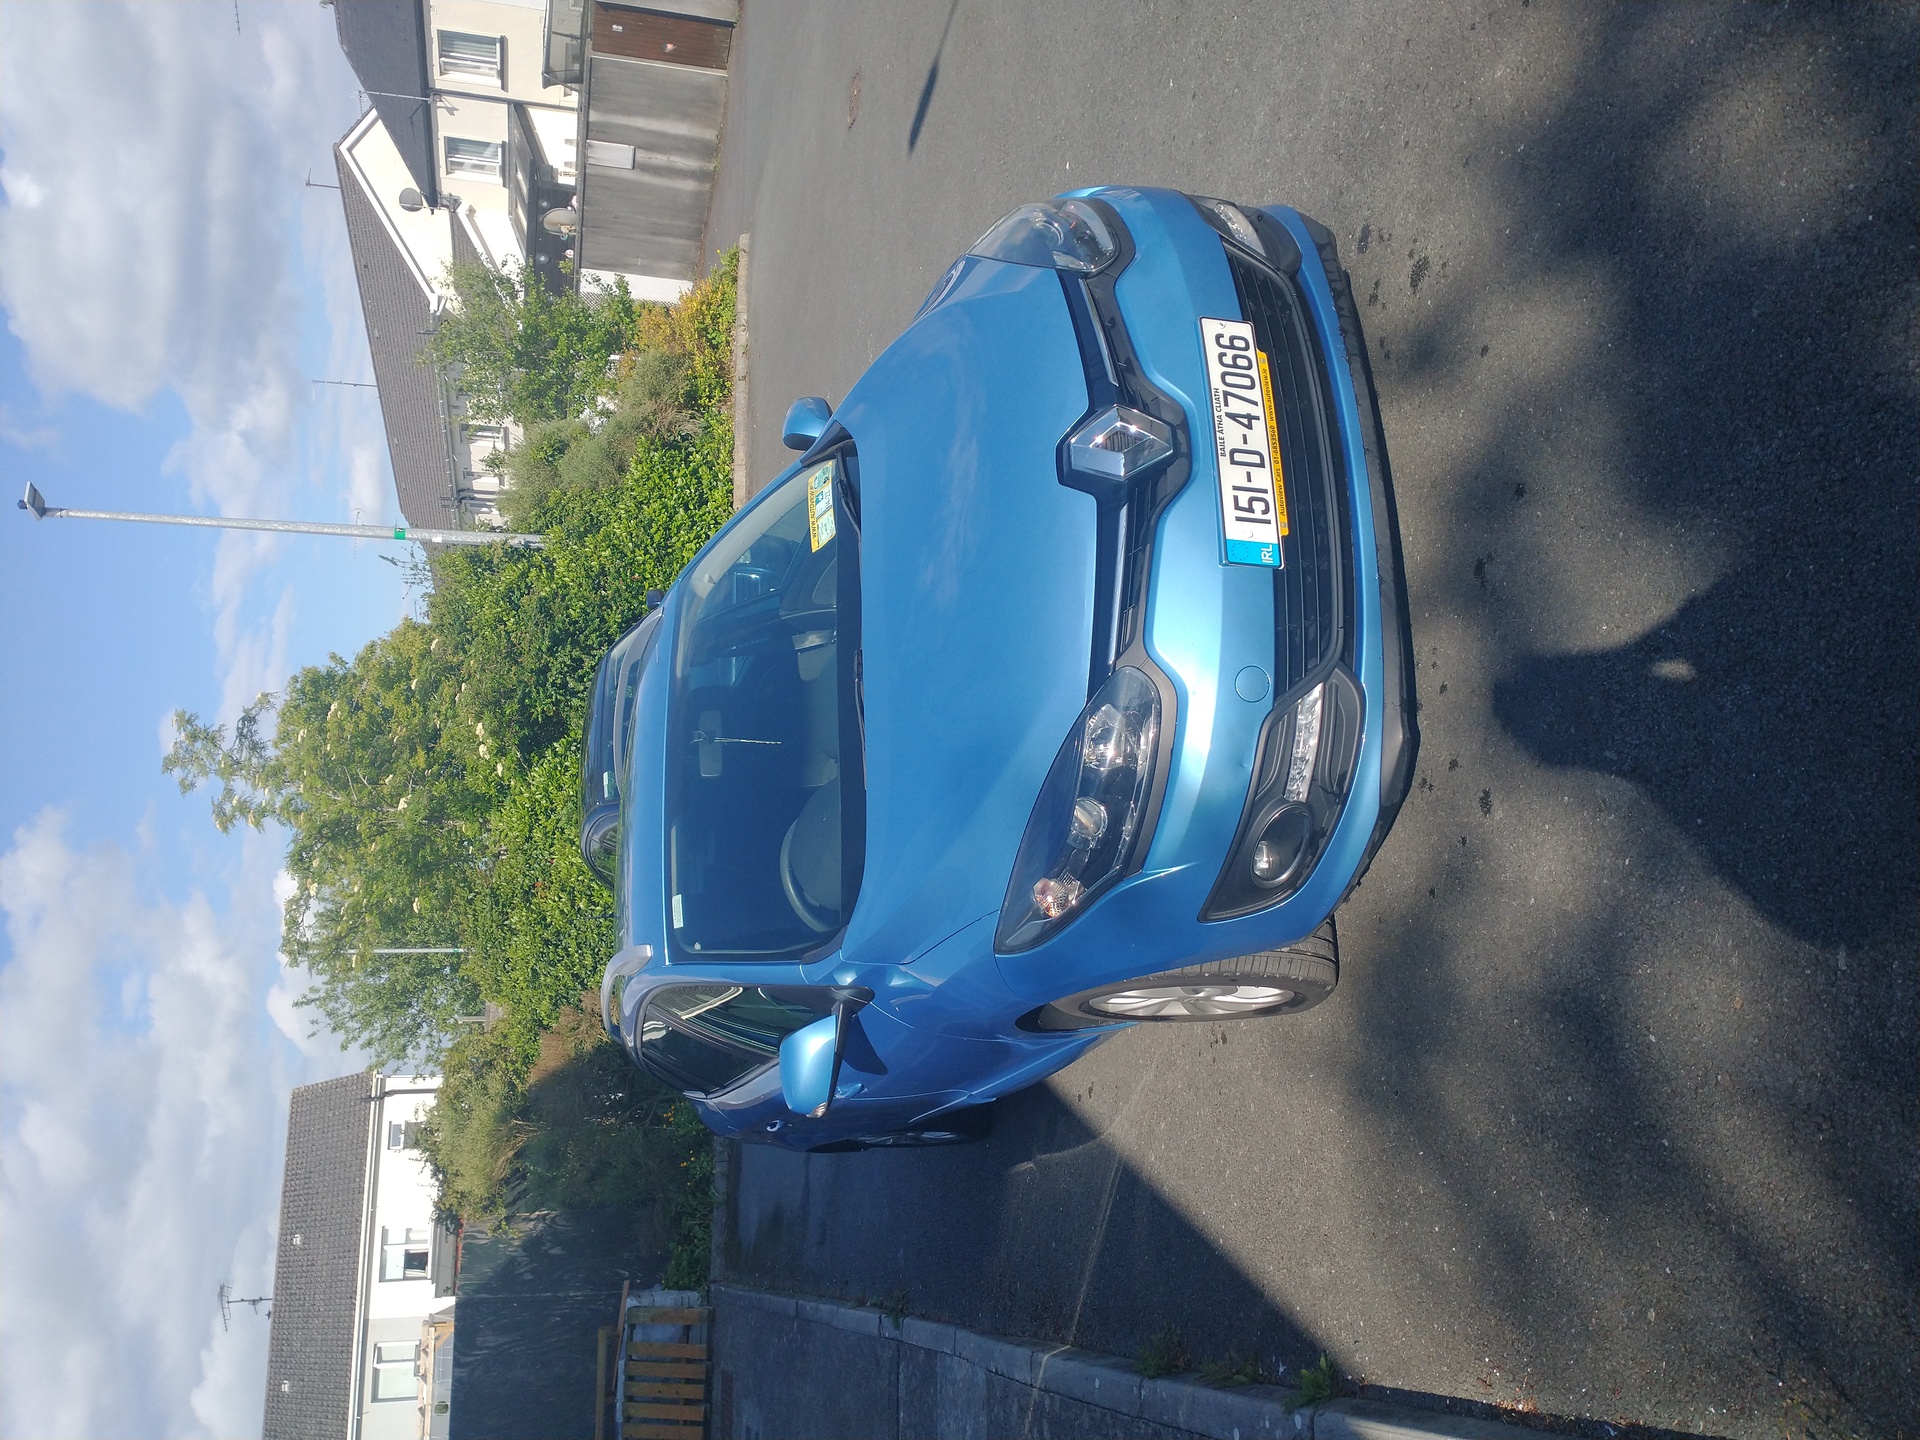 Used Renault Megane 2015 in Meath